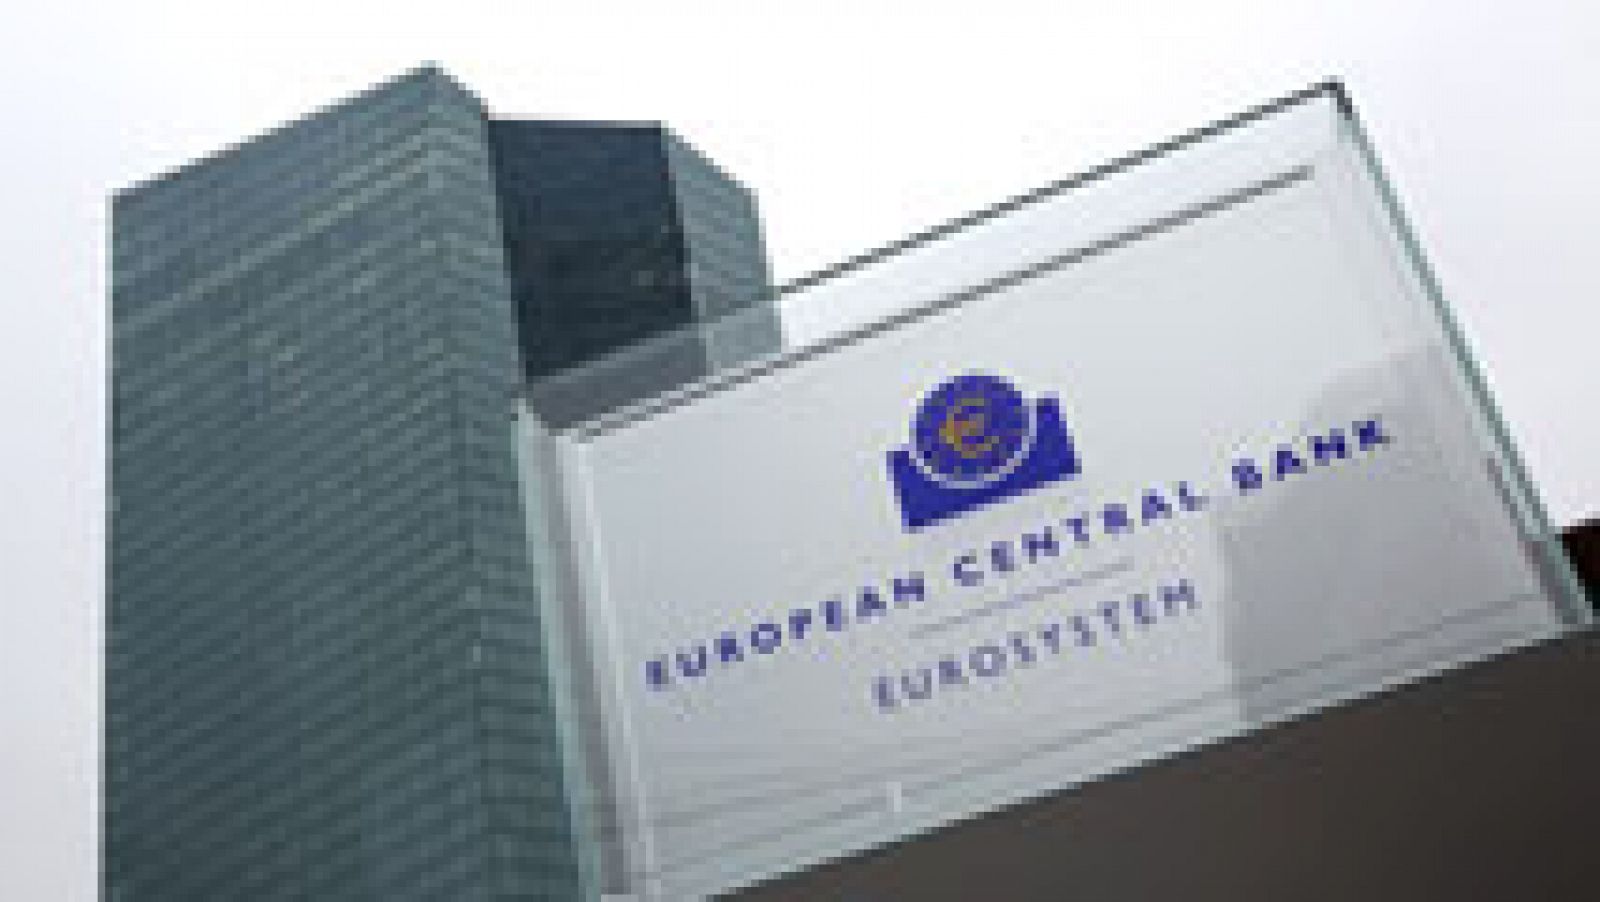  El BCE anuncia que dejará de aceptar bonos griegos como garantía a partir del próximo día 11